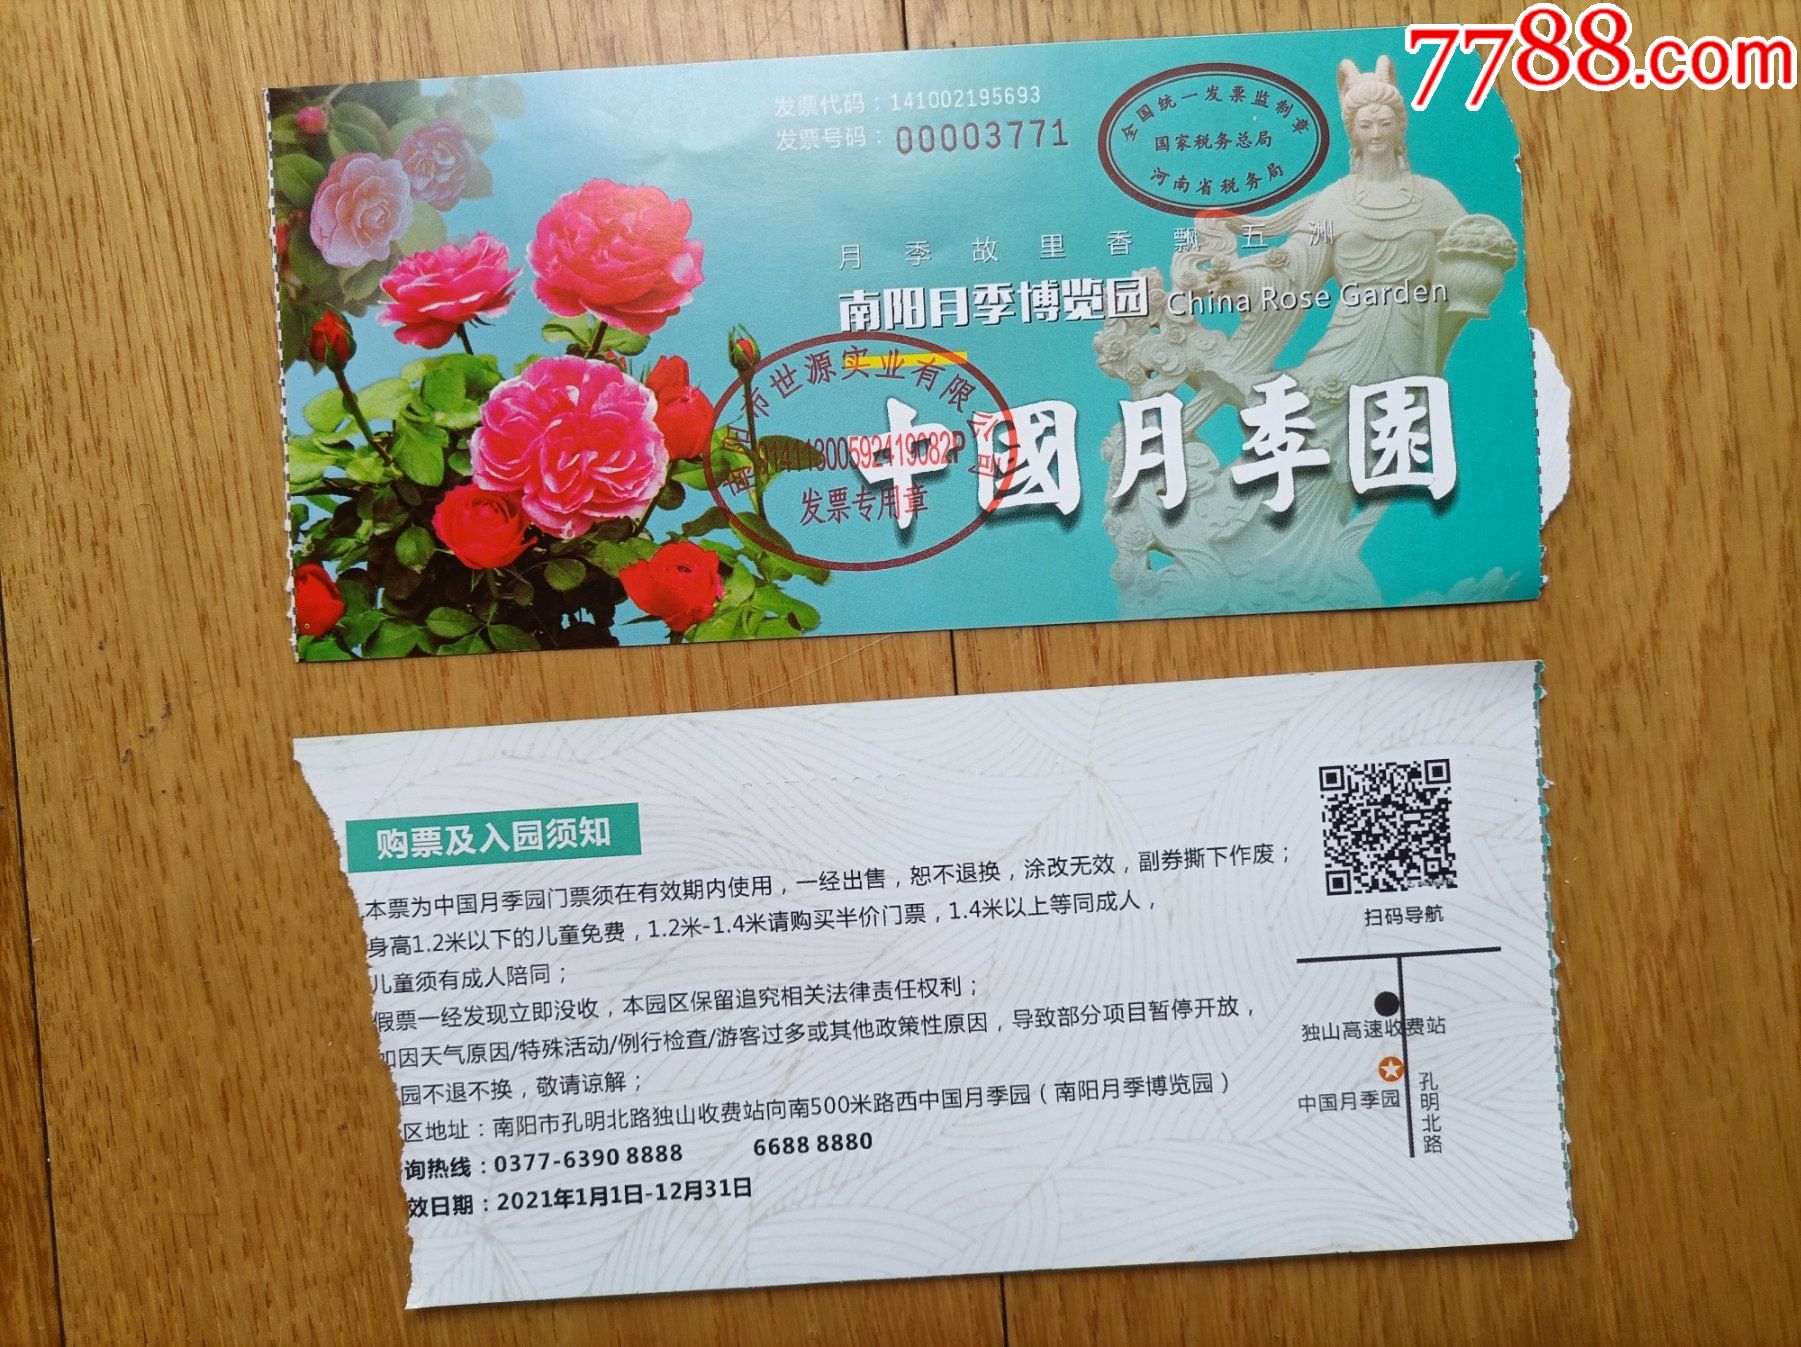 中国月季园门票图片